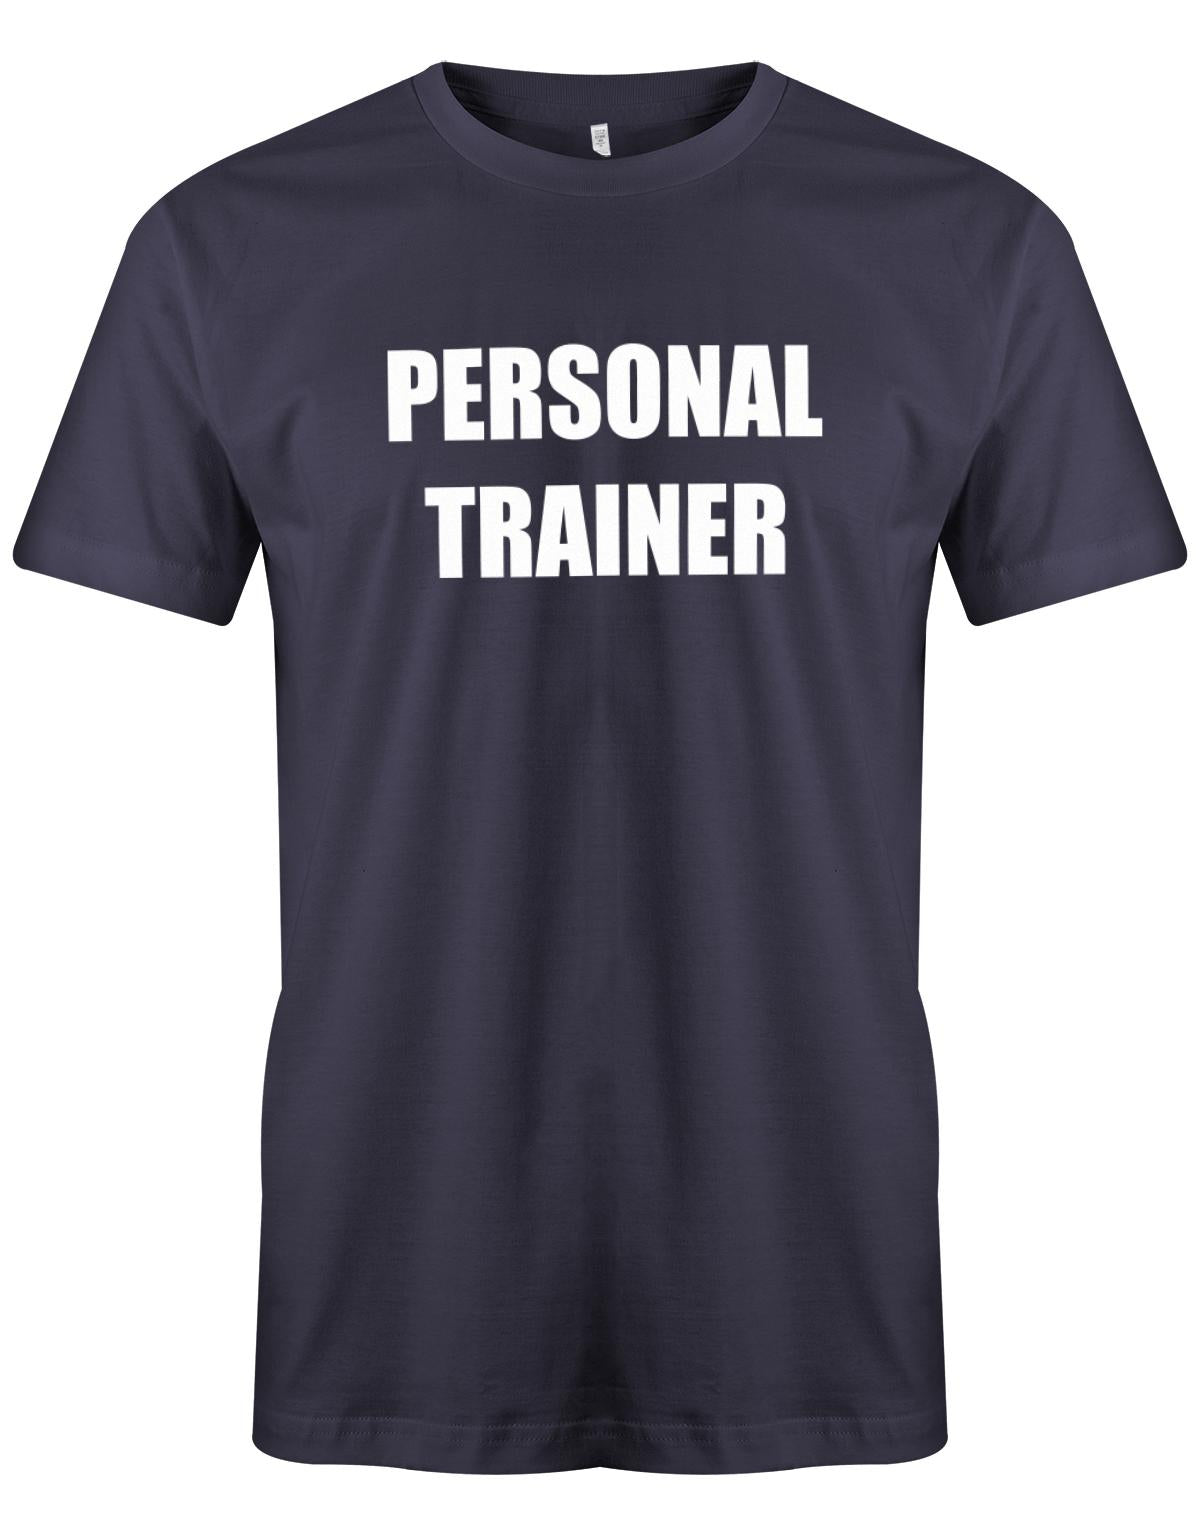 Personal-Trainer-Herren-Shirt-Navy